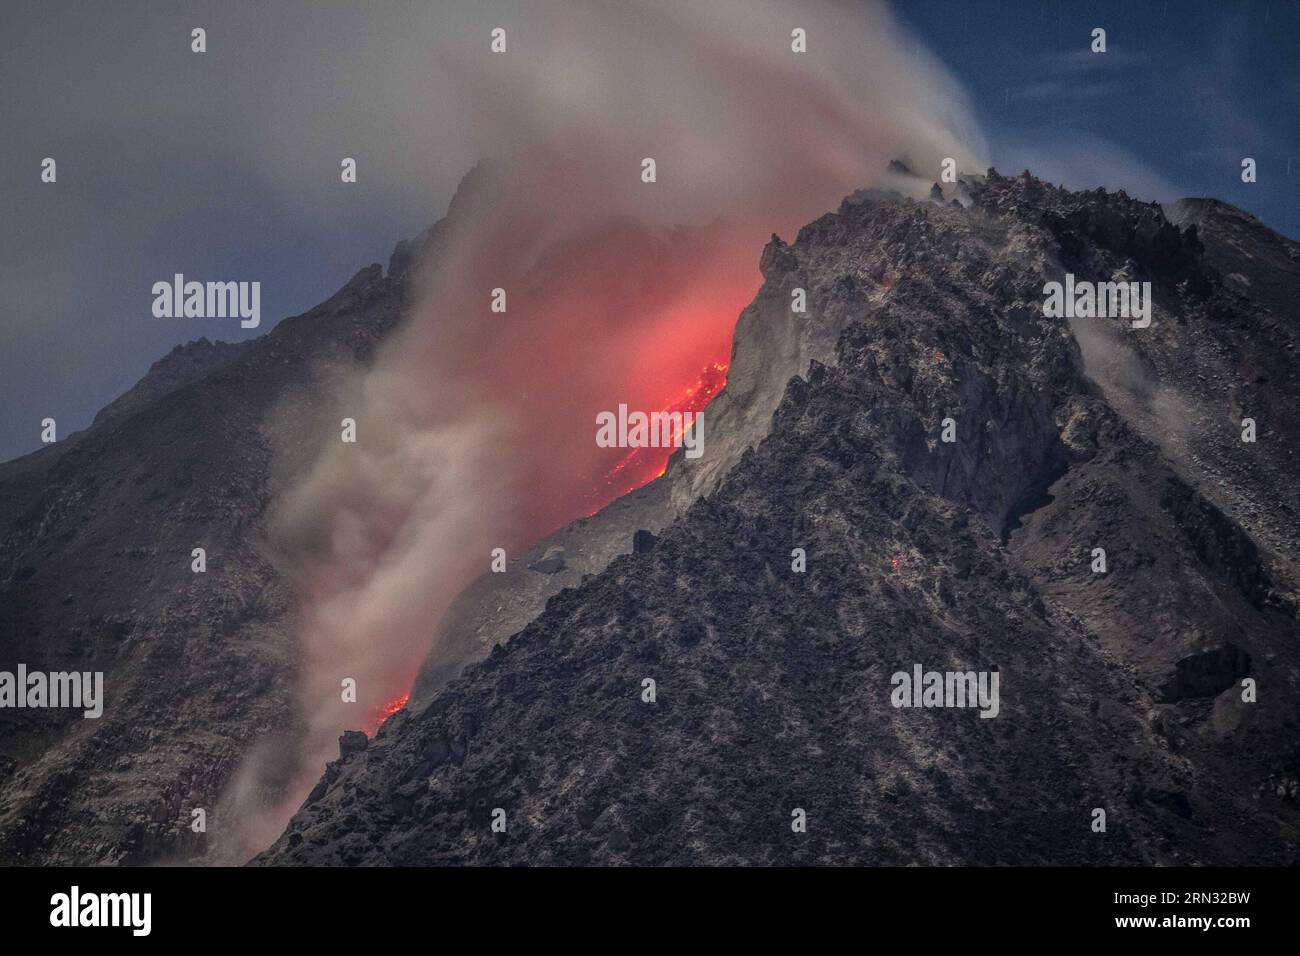 (150404) -- SUMATRA SETTENTRIONALE, 4 aprile 2015 -- la lunga fotografia di esposizione scattata prima dell'alba del 4 aprile 2015 mostra il flusso di lava bruciante e le gigantesche nubi di cenere rilasciate dal cratere durante l'eruzione del vulcano del Monte Sinabung vista dal villaggio di Kuta Tengah nel distretto di Karo, nella provincia di Sumatra settentrionale dell'Indonesia. Il vulcano del Monte Sinabung nel distretto di Karo, nella provincia di Sumatra settentrionale, è eruttato giovedì pomeriggio, sparando una colonna di cenere fino a 2 km verso il cielo e innescando un'evacuazione su piccola scala, ha detto il funzionario qui prima di venerdì. ) INDONESIA-SUMATRA SETTENTRIONALE-MONTE SINABUNG-ERUPTION TANTOX Foto Stock